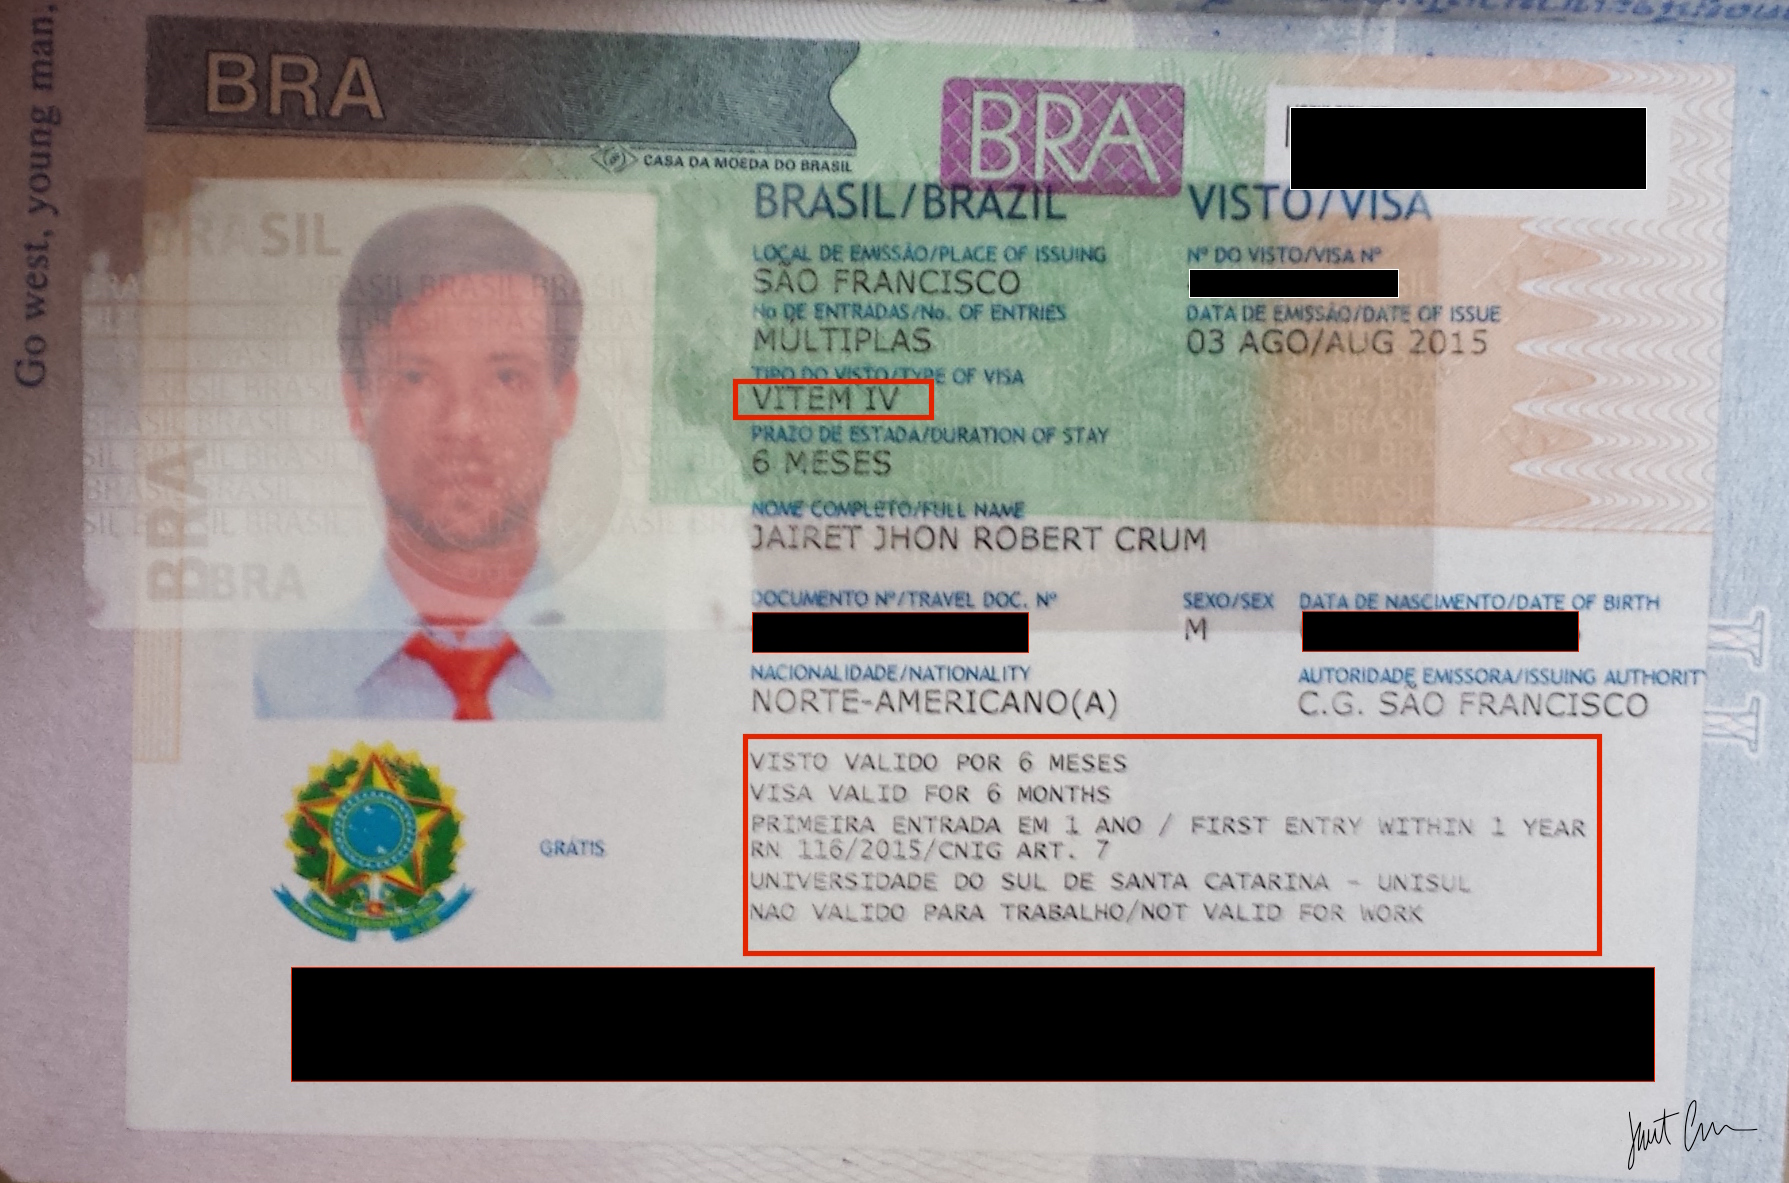 Has issued перевод. Виза в Бразилию. Brazil work visa. Виза в Бразилию для новозеландцев. Passport Issue place испанская виза.